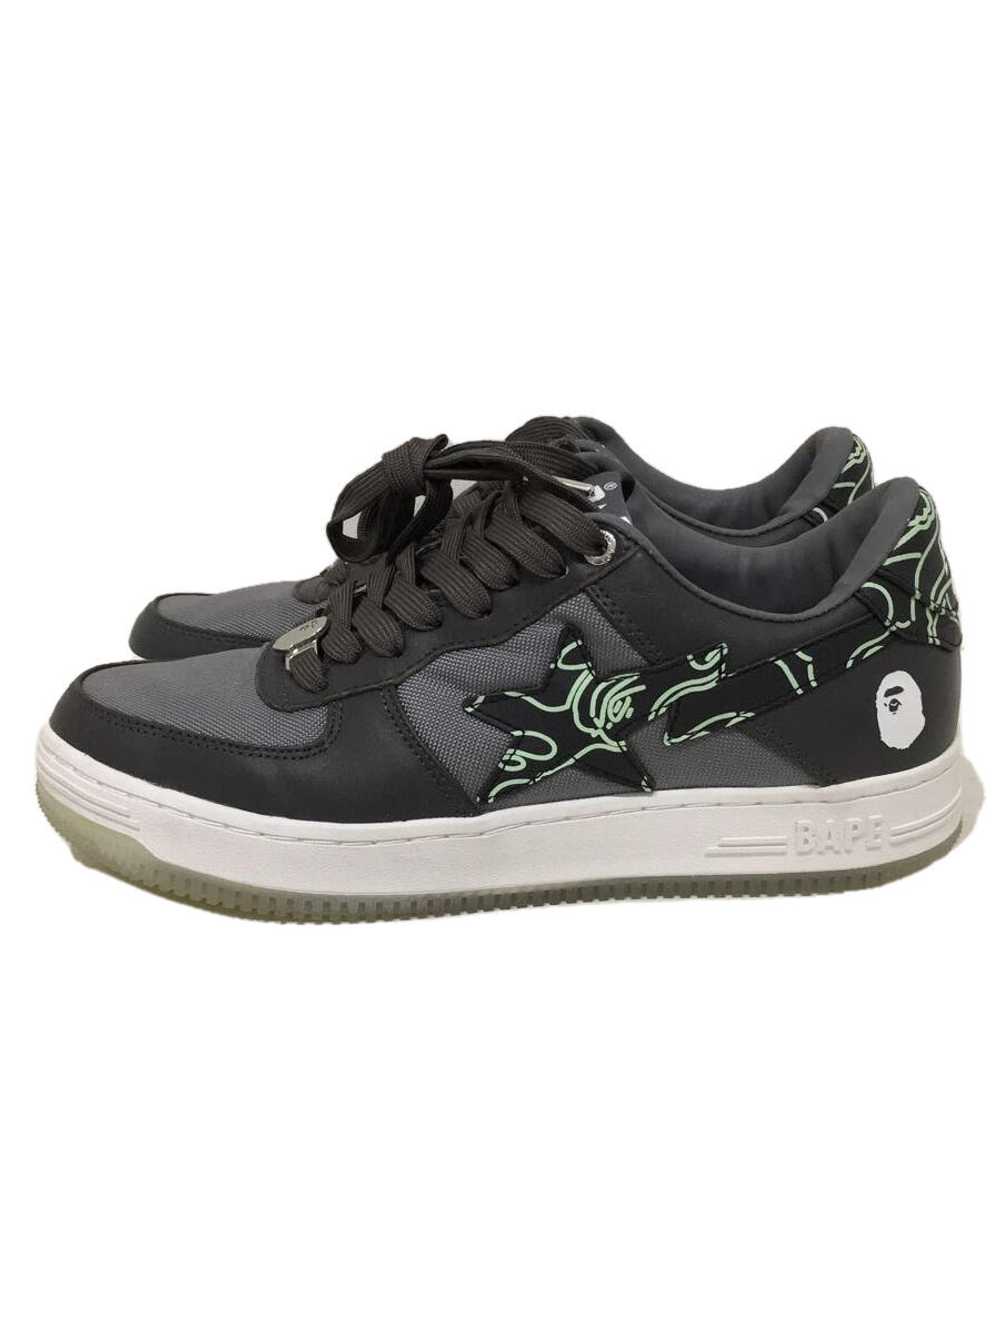 Men 8.0US Used Bape Sta Low Cut Sneakers Gray Sho… - image 1